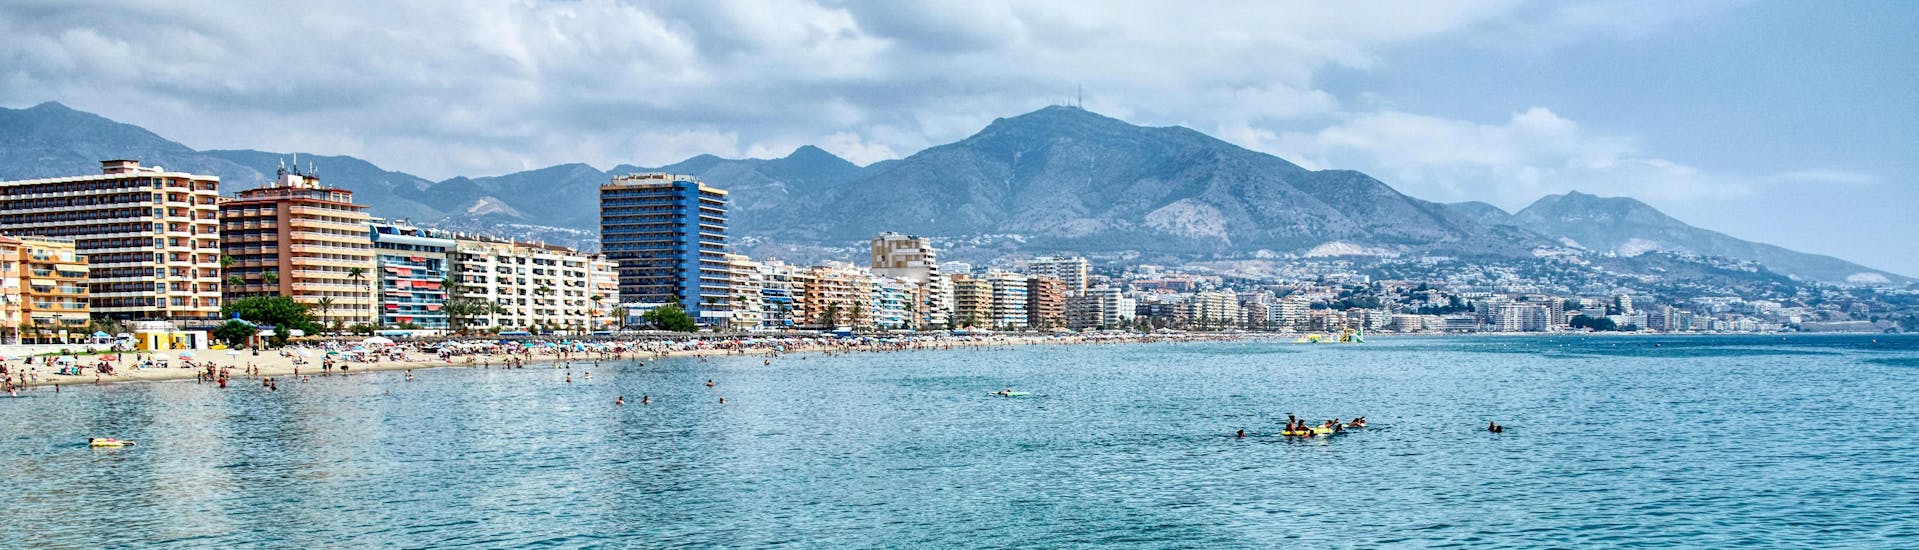 Blick auf die Küste von Fuengirola, Málaga, einem beliebten Urlaubsziel für Wassersport und Bootsfahrten.